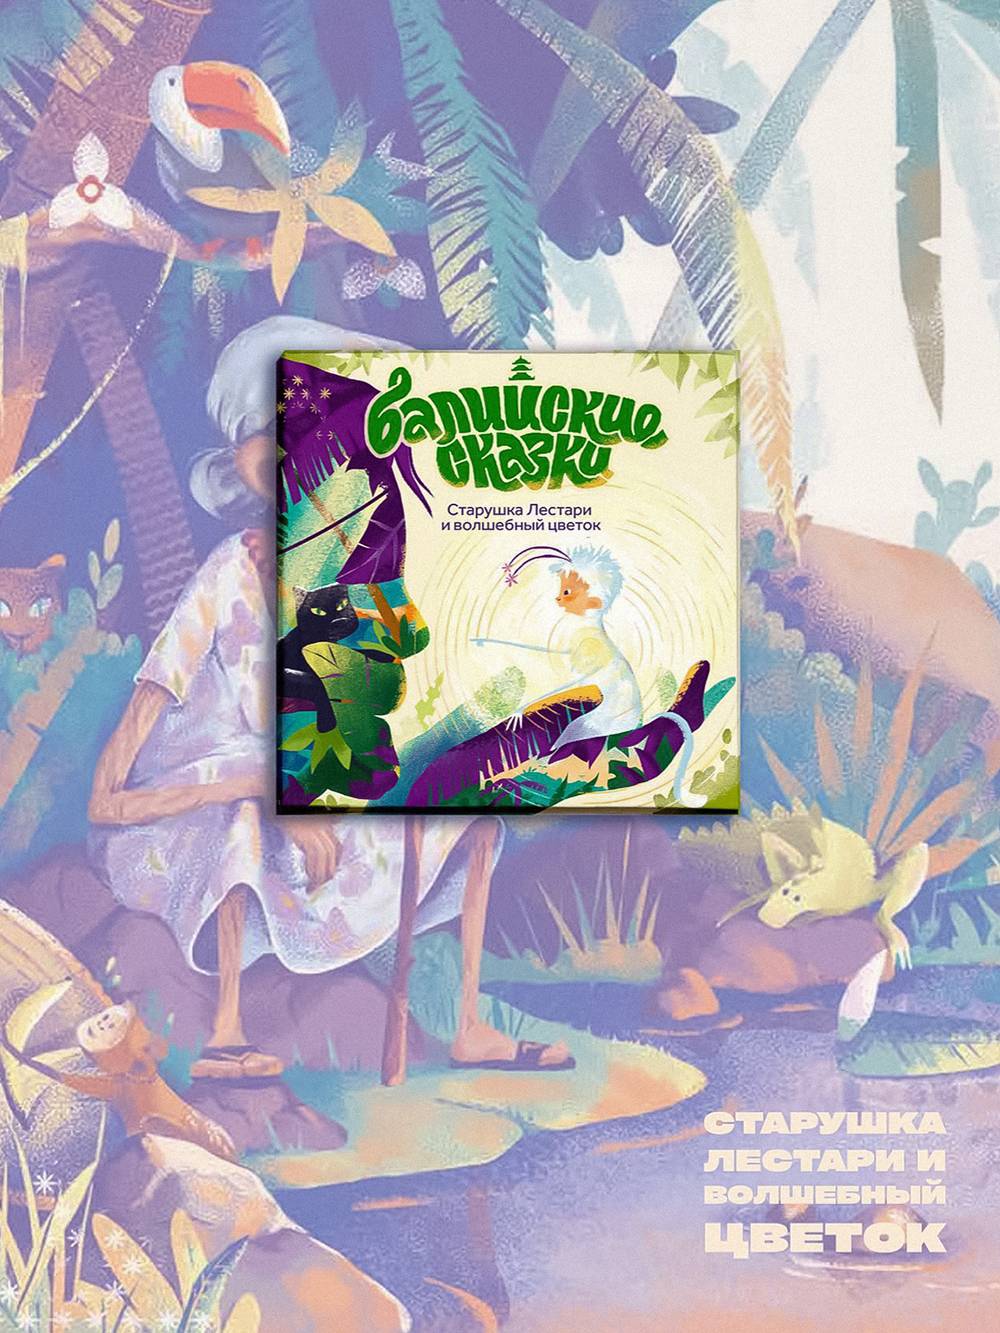 Обложка книги «Старушка Лестари и волшебный цветок» из серии «Балийские сказки»